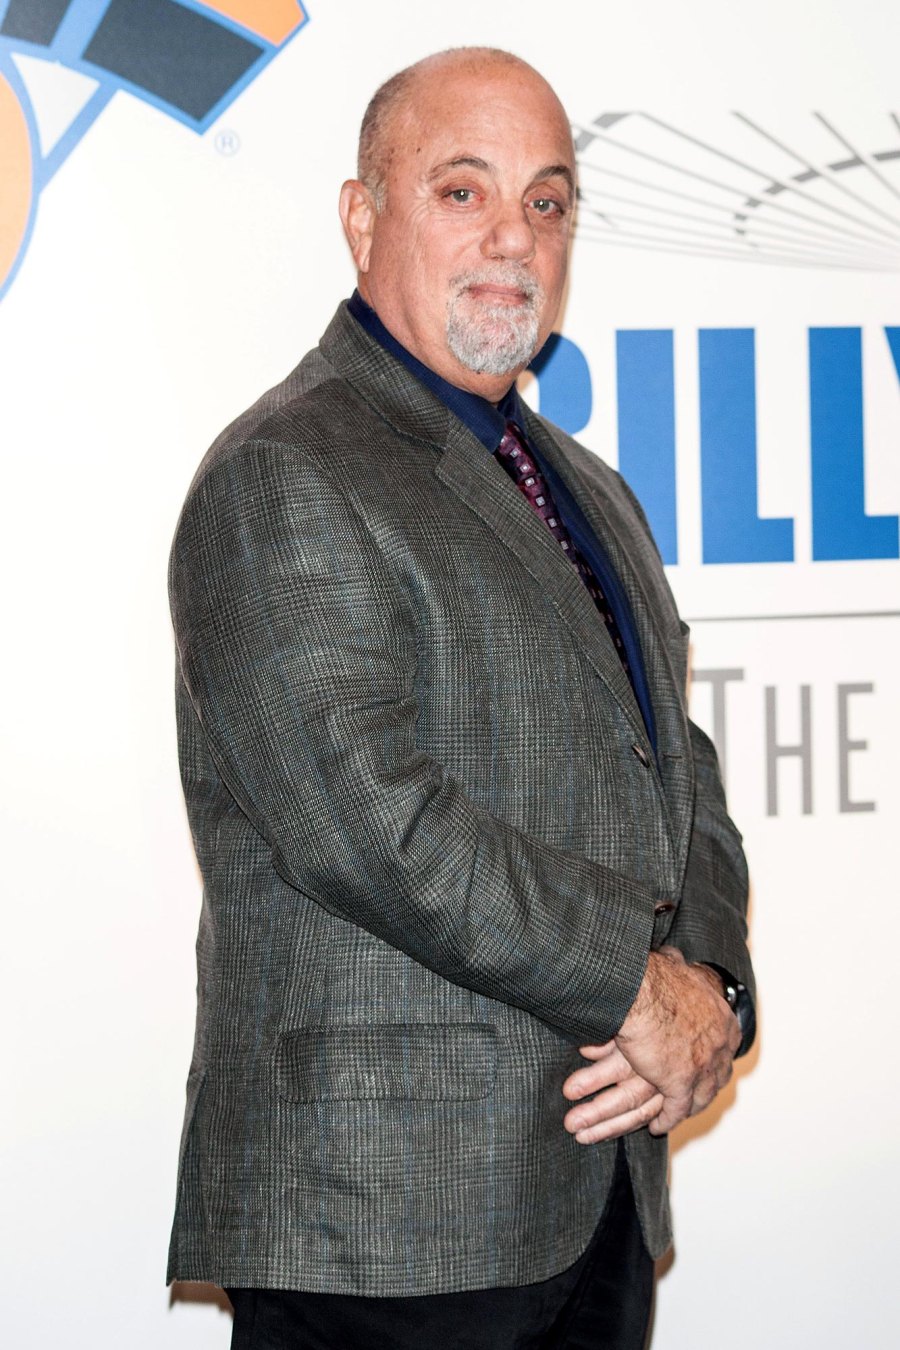 Billy Joel Celebrities Mourn Tony Bennett Death